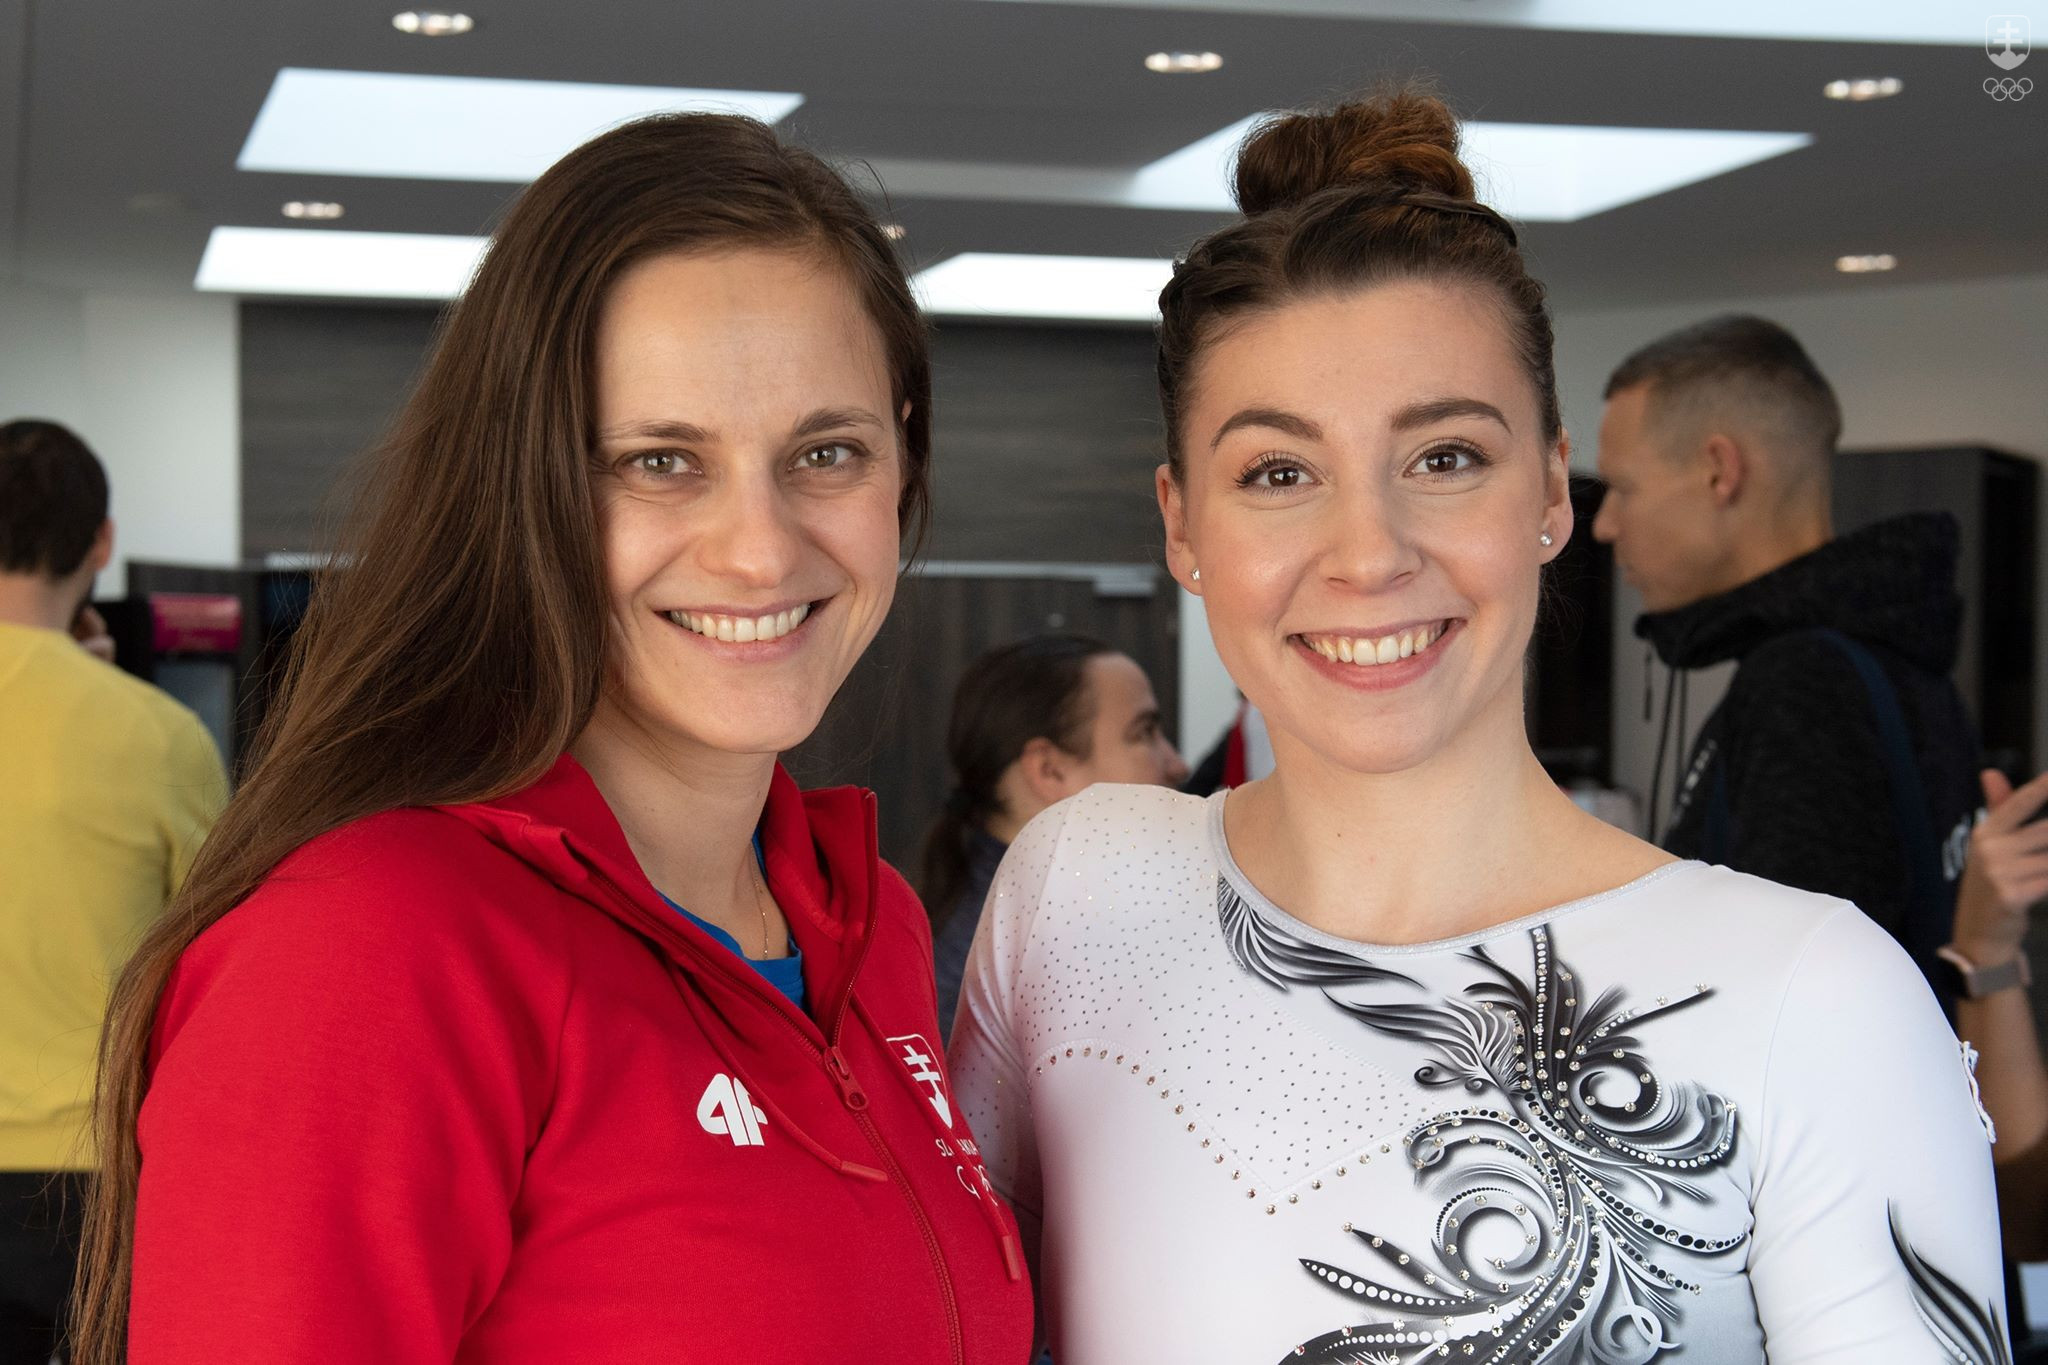 Na snímke vľavo strelkyňa Dana Barteková a vpravo gymnastka Barbora Mokošová.
